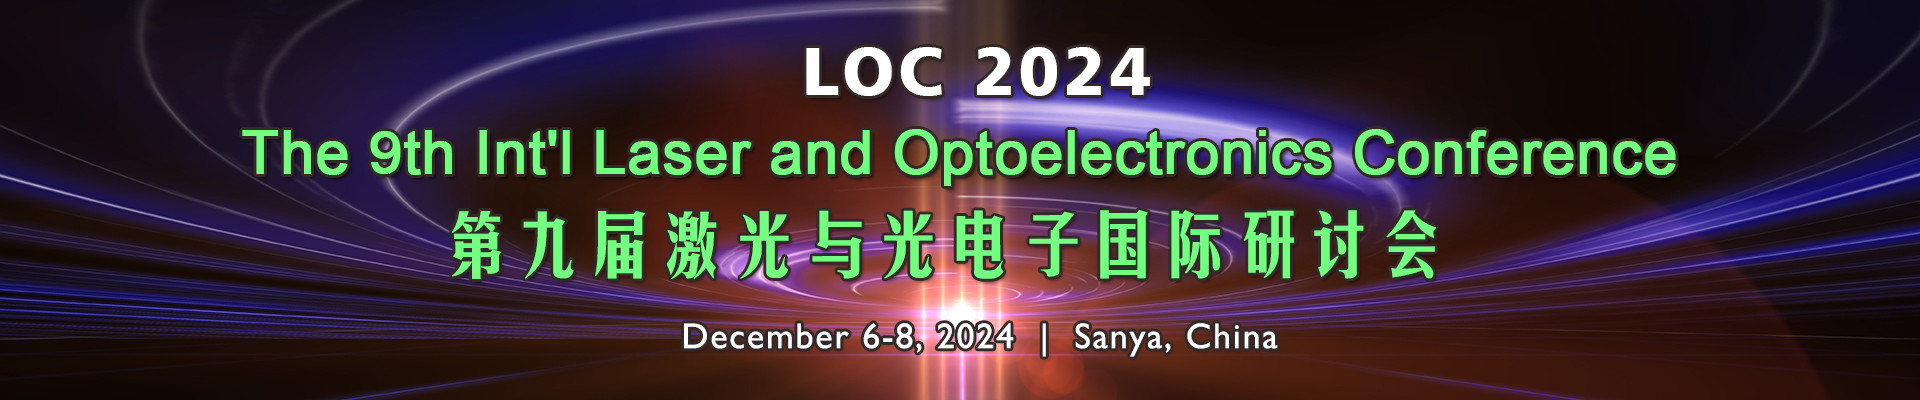 第九届激光与光电子国际研讨会(LOC 2024)